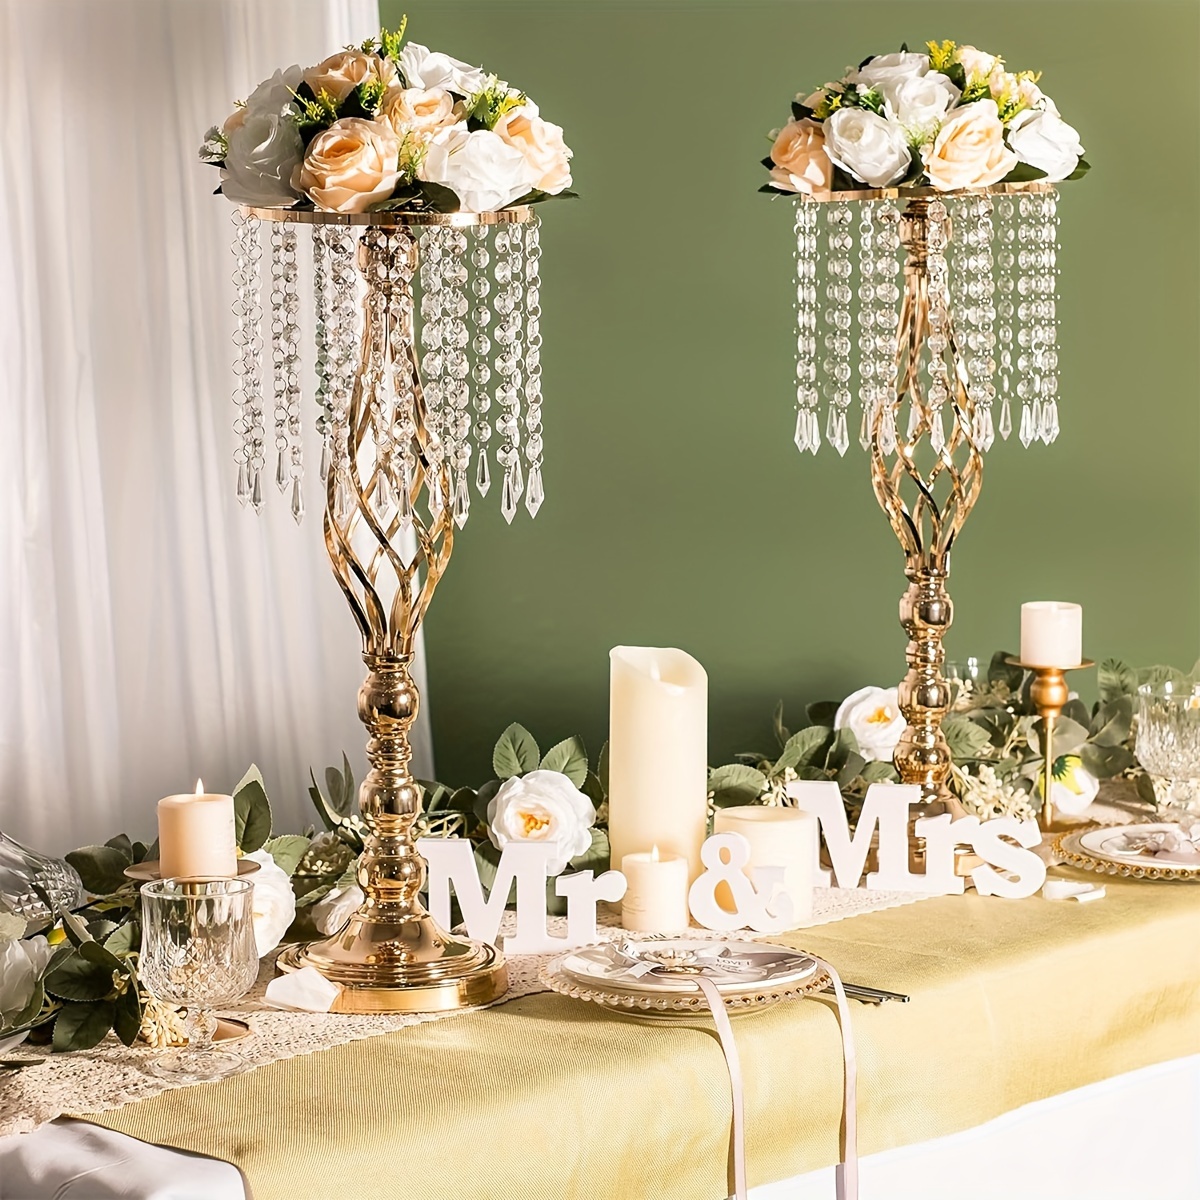 1個、フラワースタンド金属花瓶、結婚式のテーブルセンターピース、小さなテーブルセンターピース、結婚記念日、披露宴、お祝いフラワーアレンジメント、ダイニングテーブル、西洋クラシックホームデコレーション用。